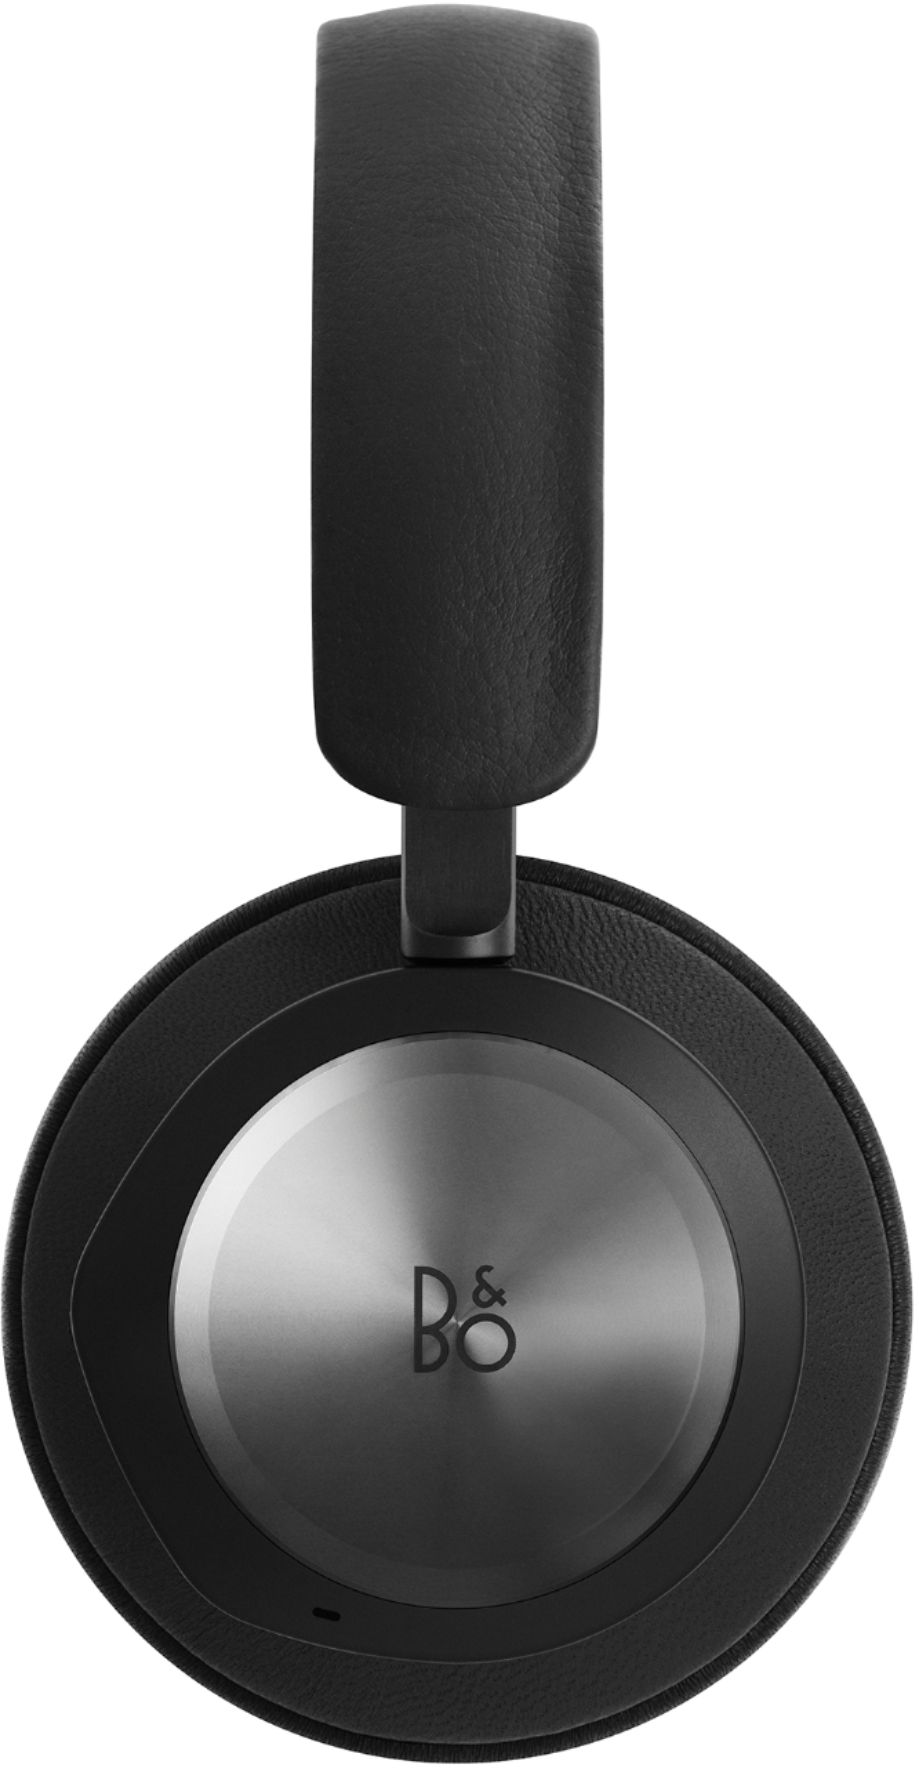 Extreem belangrijk werkloosheid Beperkingen Bang & Olufsen Beoplay Portal Xbox Wireless Noise Cancelling Over-the-Ear  Headphones Black Anthracite 3210 - Best Buy